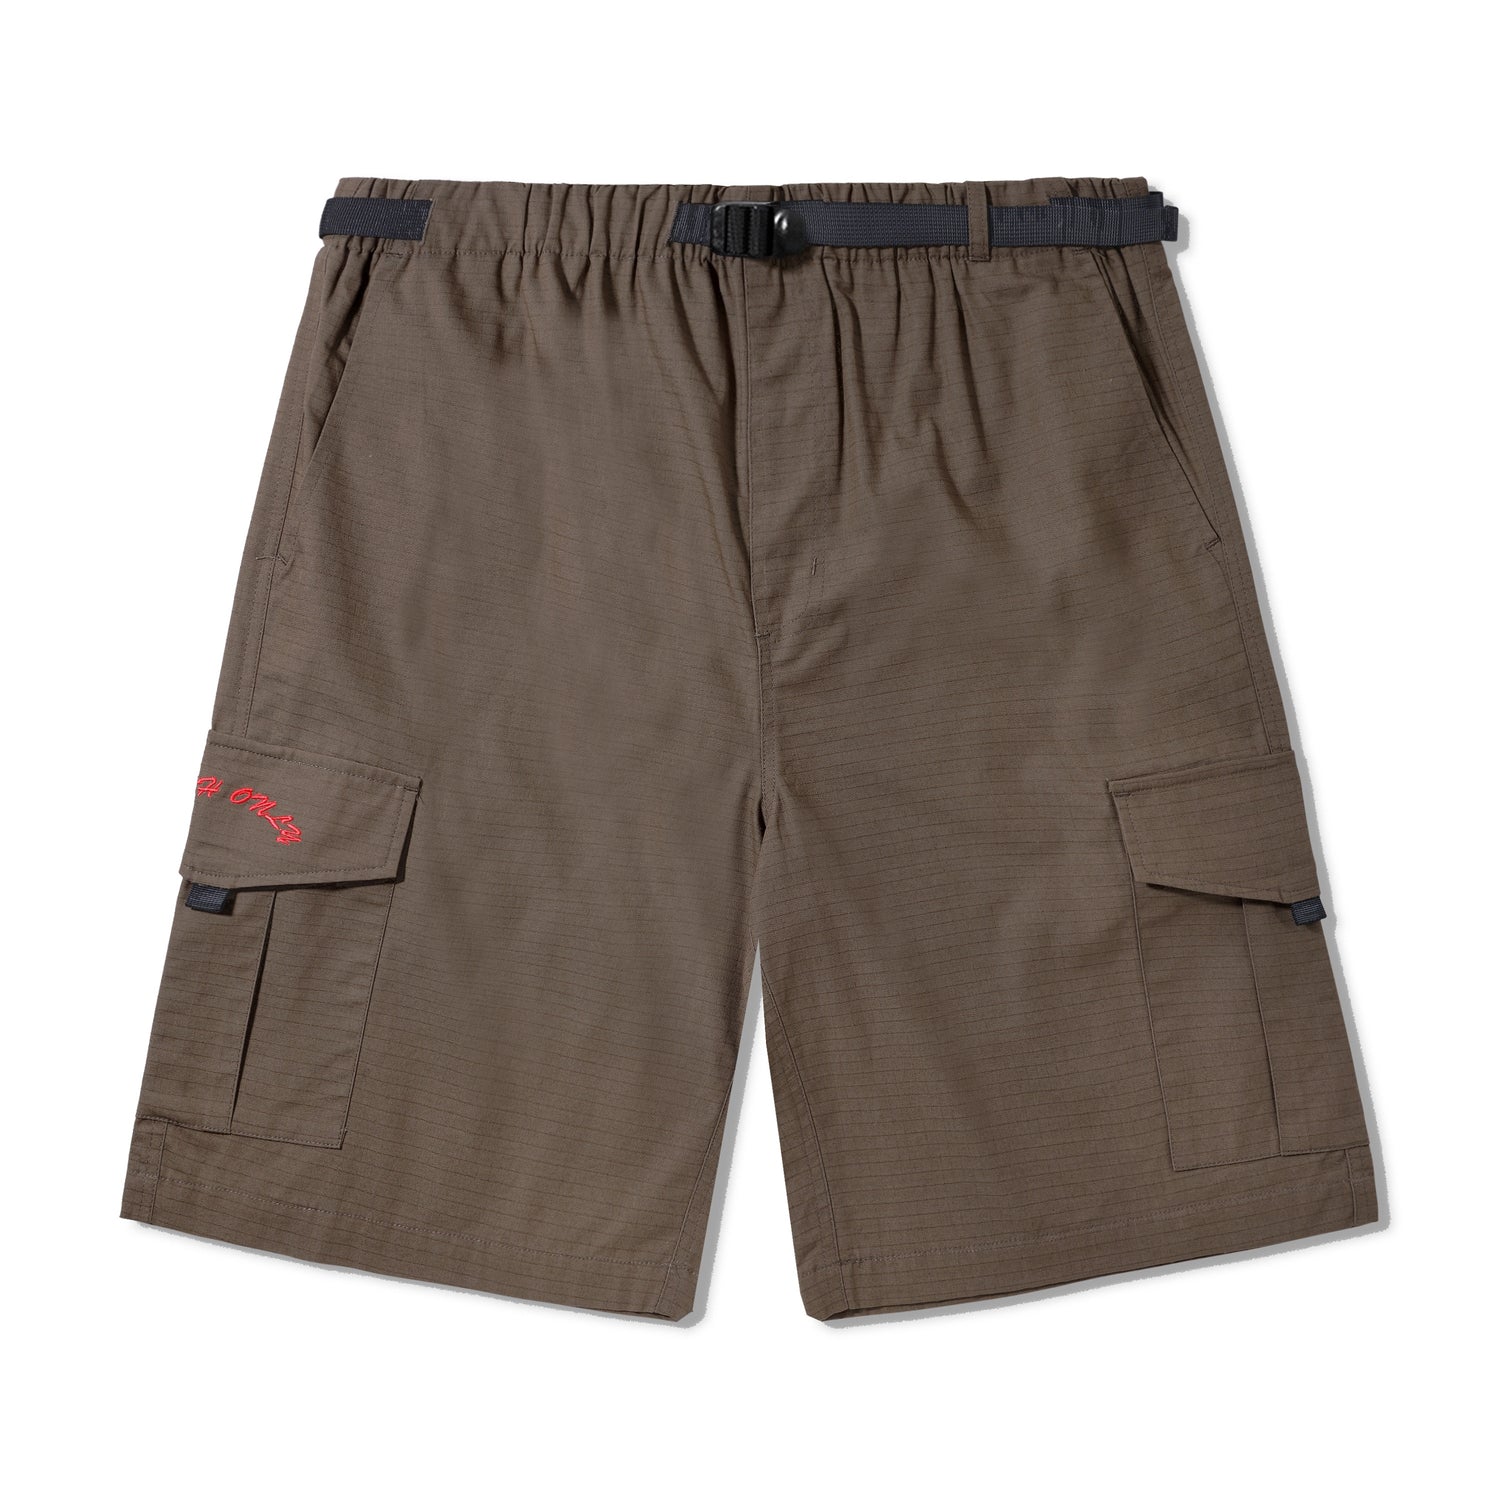 All Terrain Cargo Shorts, Brown